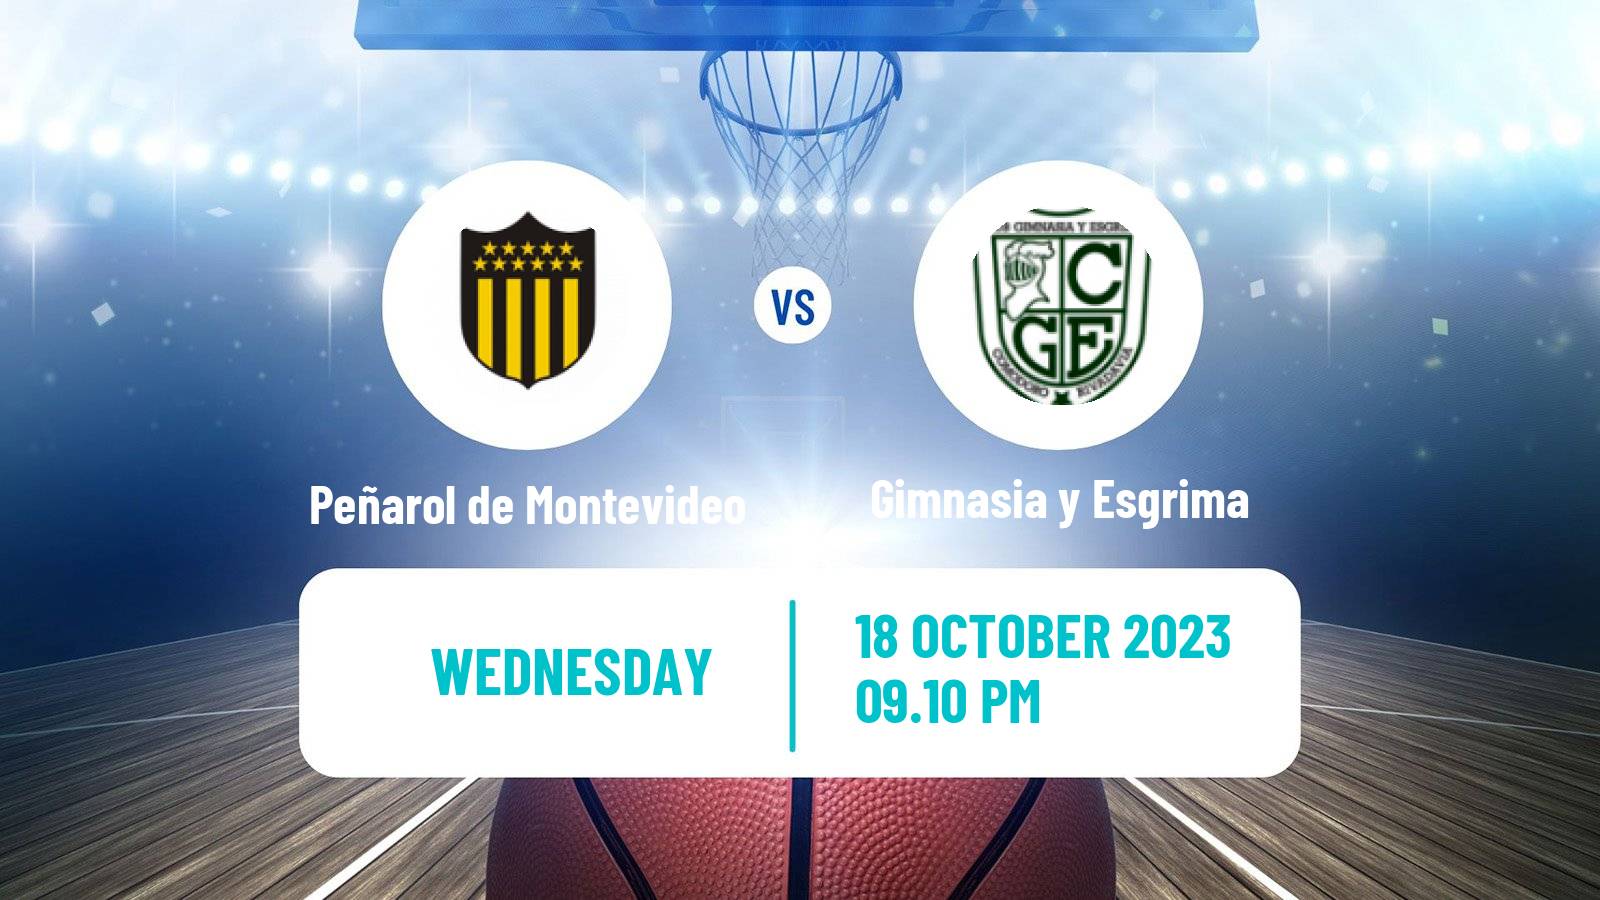 Basketball Basketball South American League Peñarol de Montevideo - Gimnasia y Esgrima